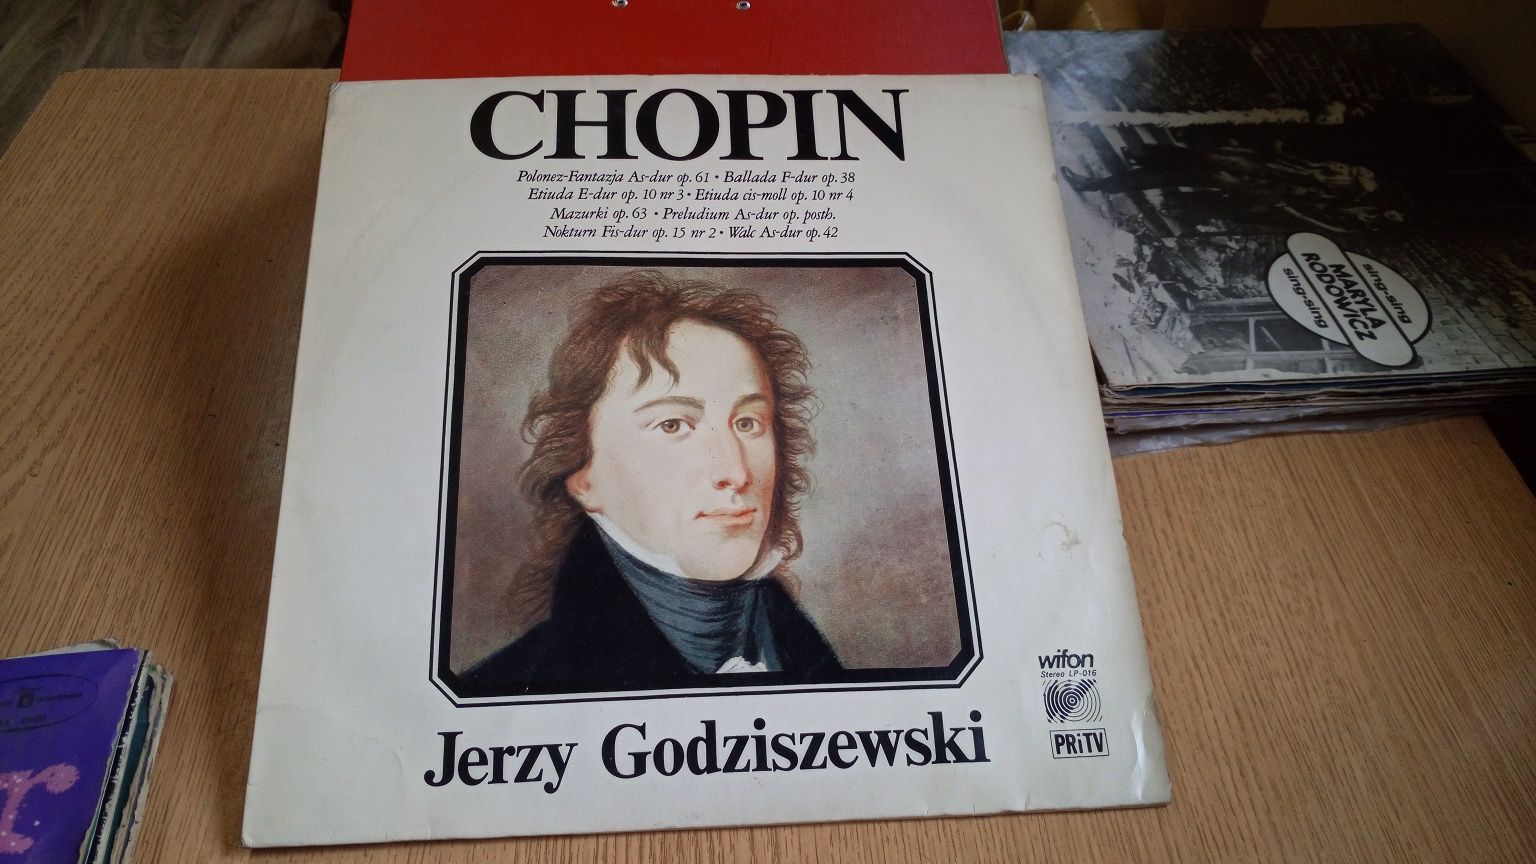 Chopin Jerzego Godziszewski